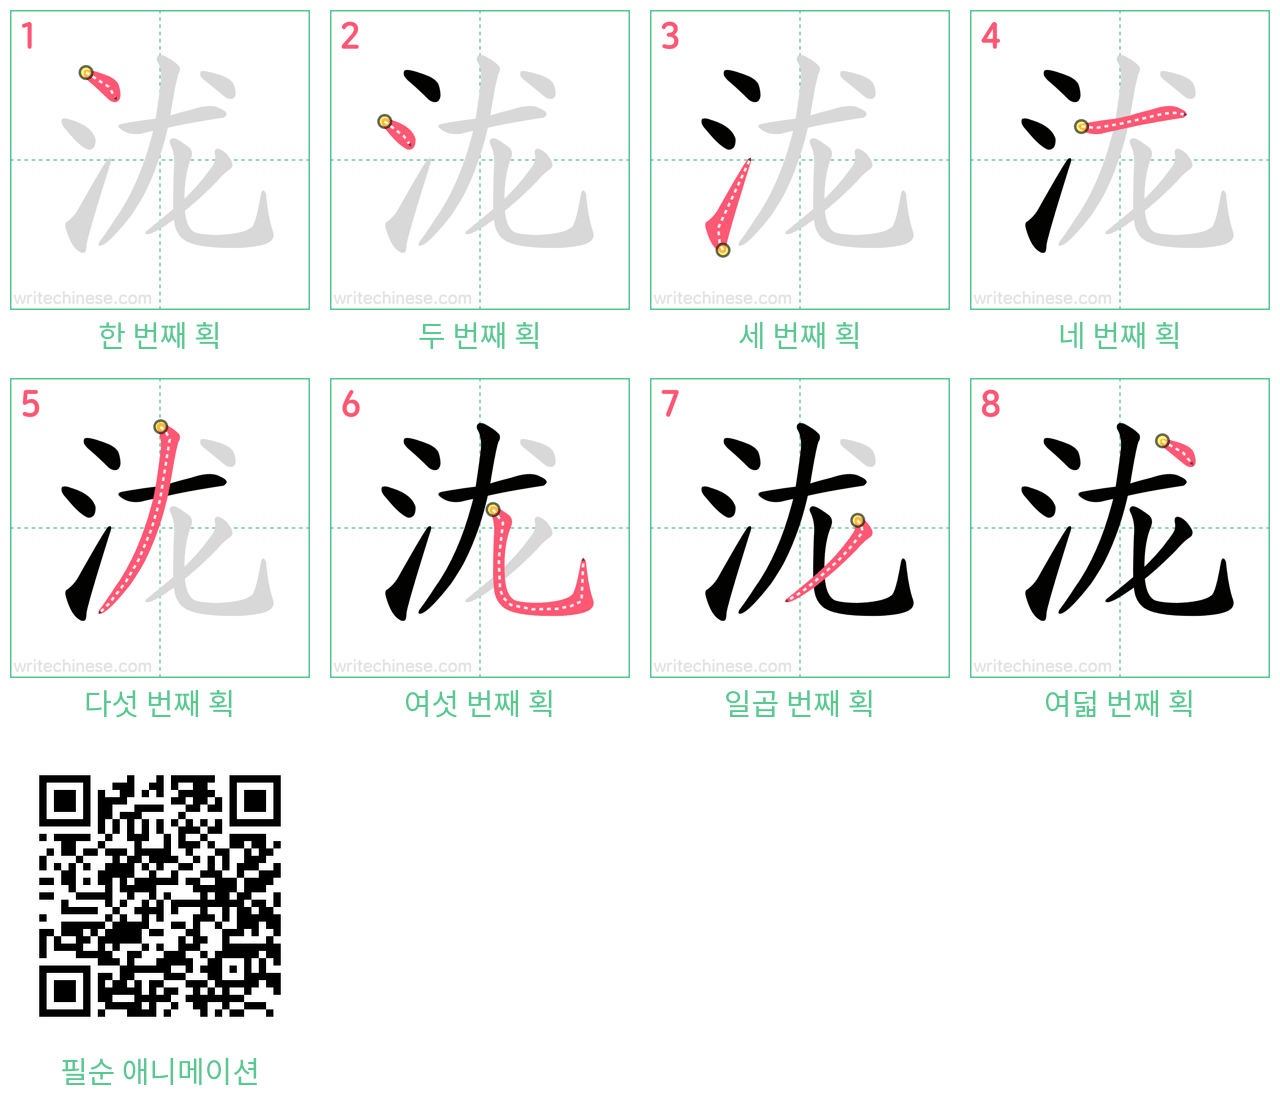 泷 step-by-step stroke order diagrams